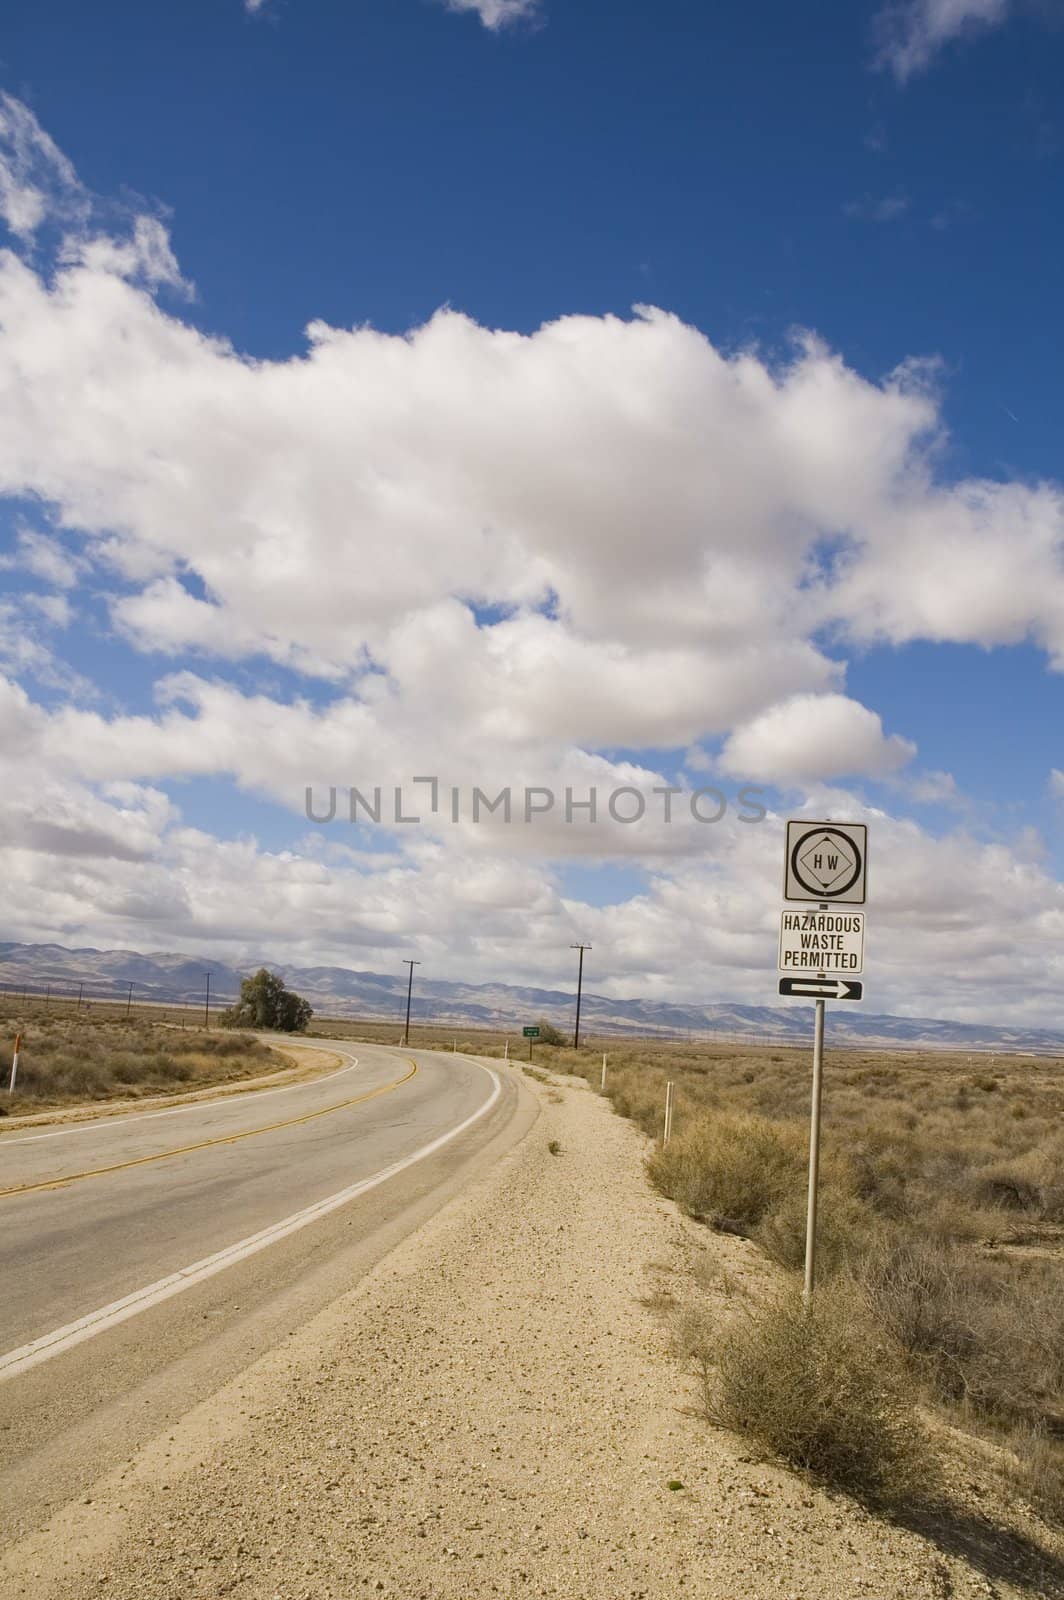 A hazardous waste roadsign in california